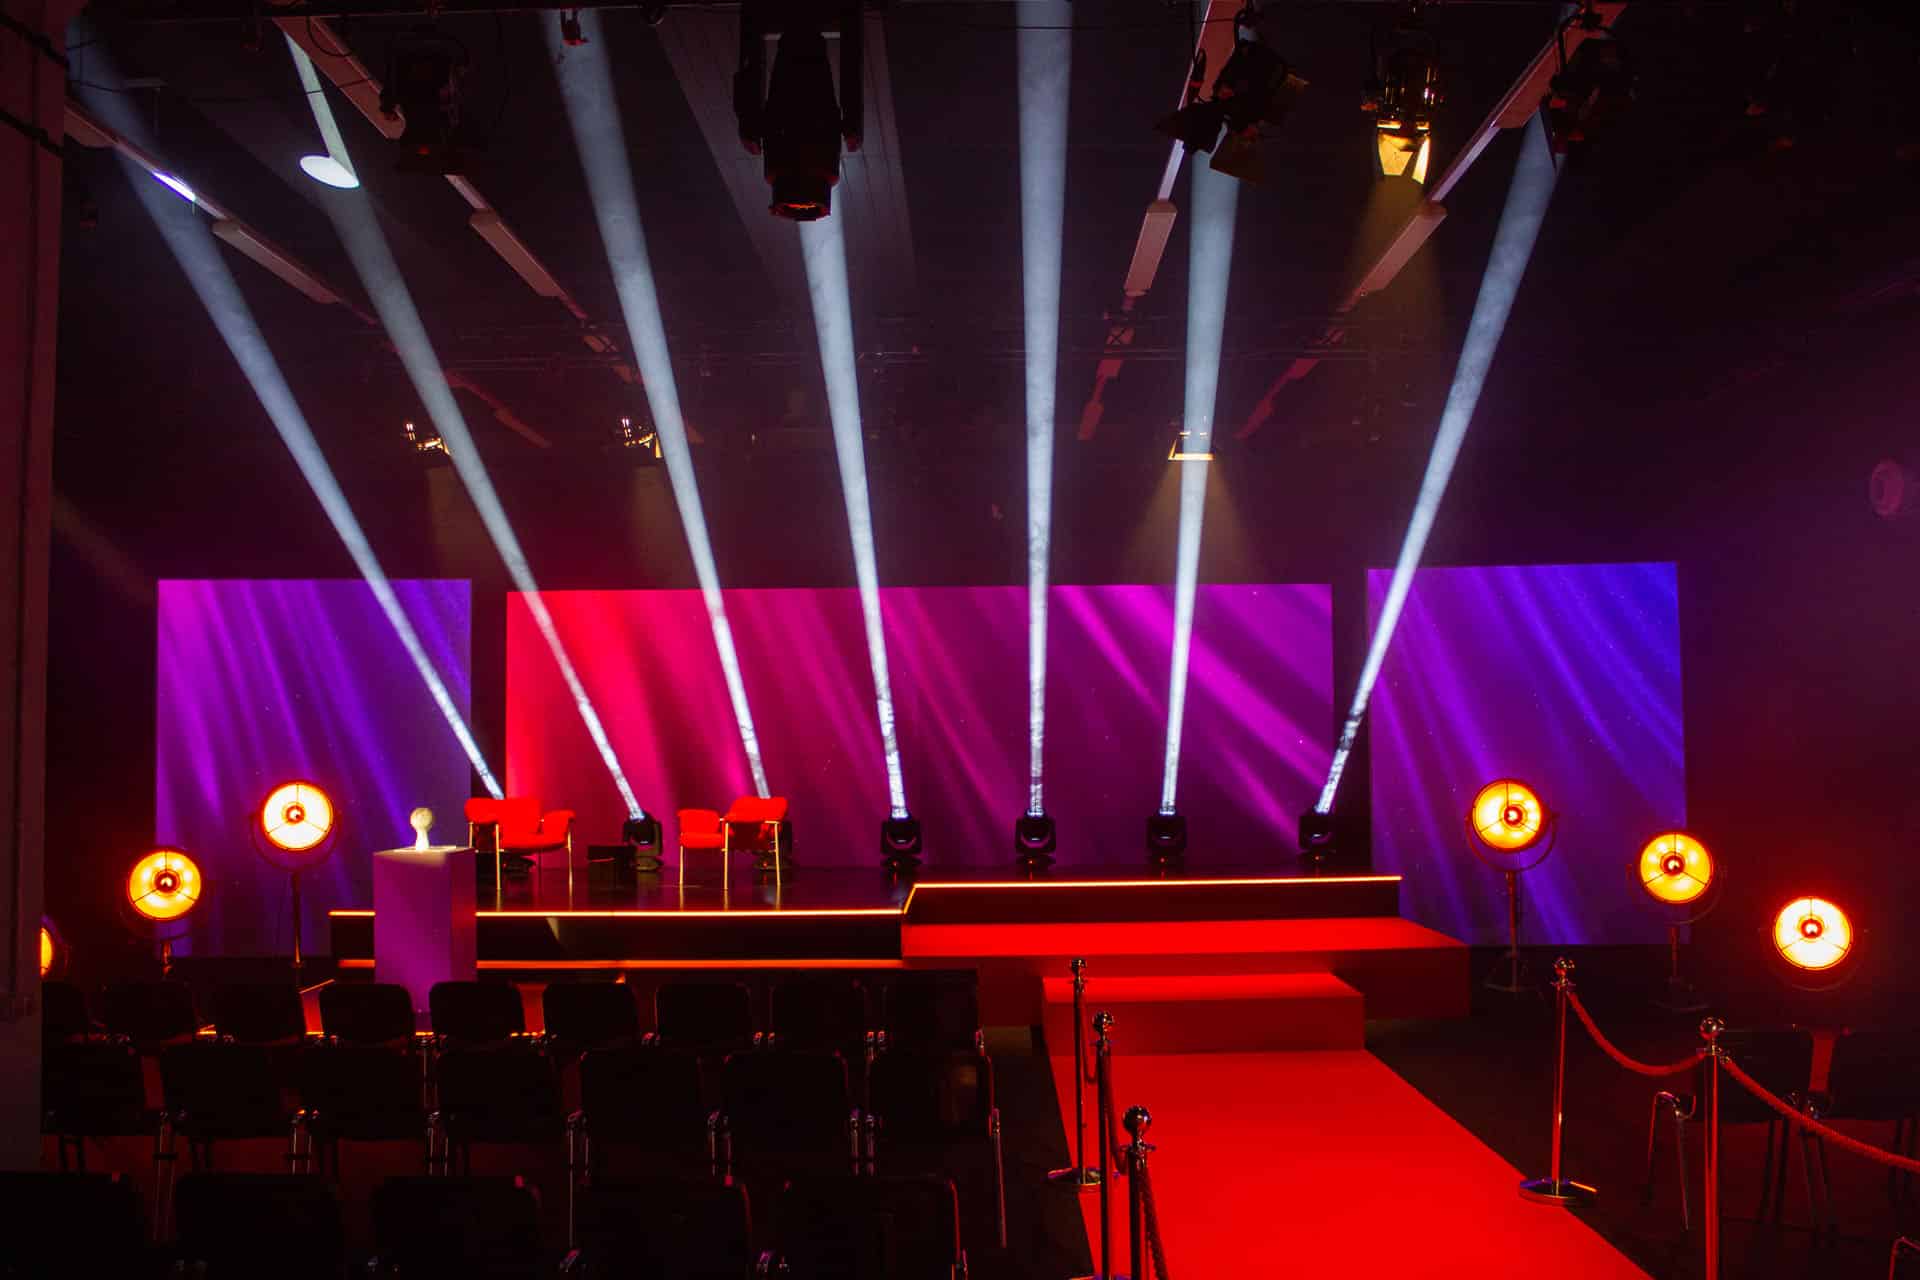 Eine mehrstufige Bühne mit LED Kante, Scheinwerfern und drei Separierter LED Wände